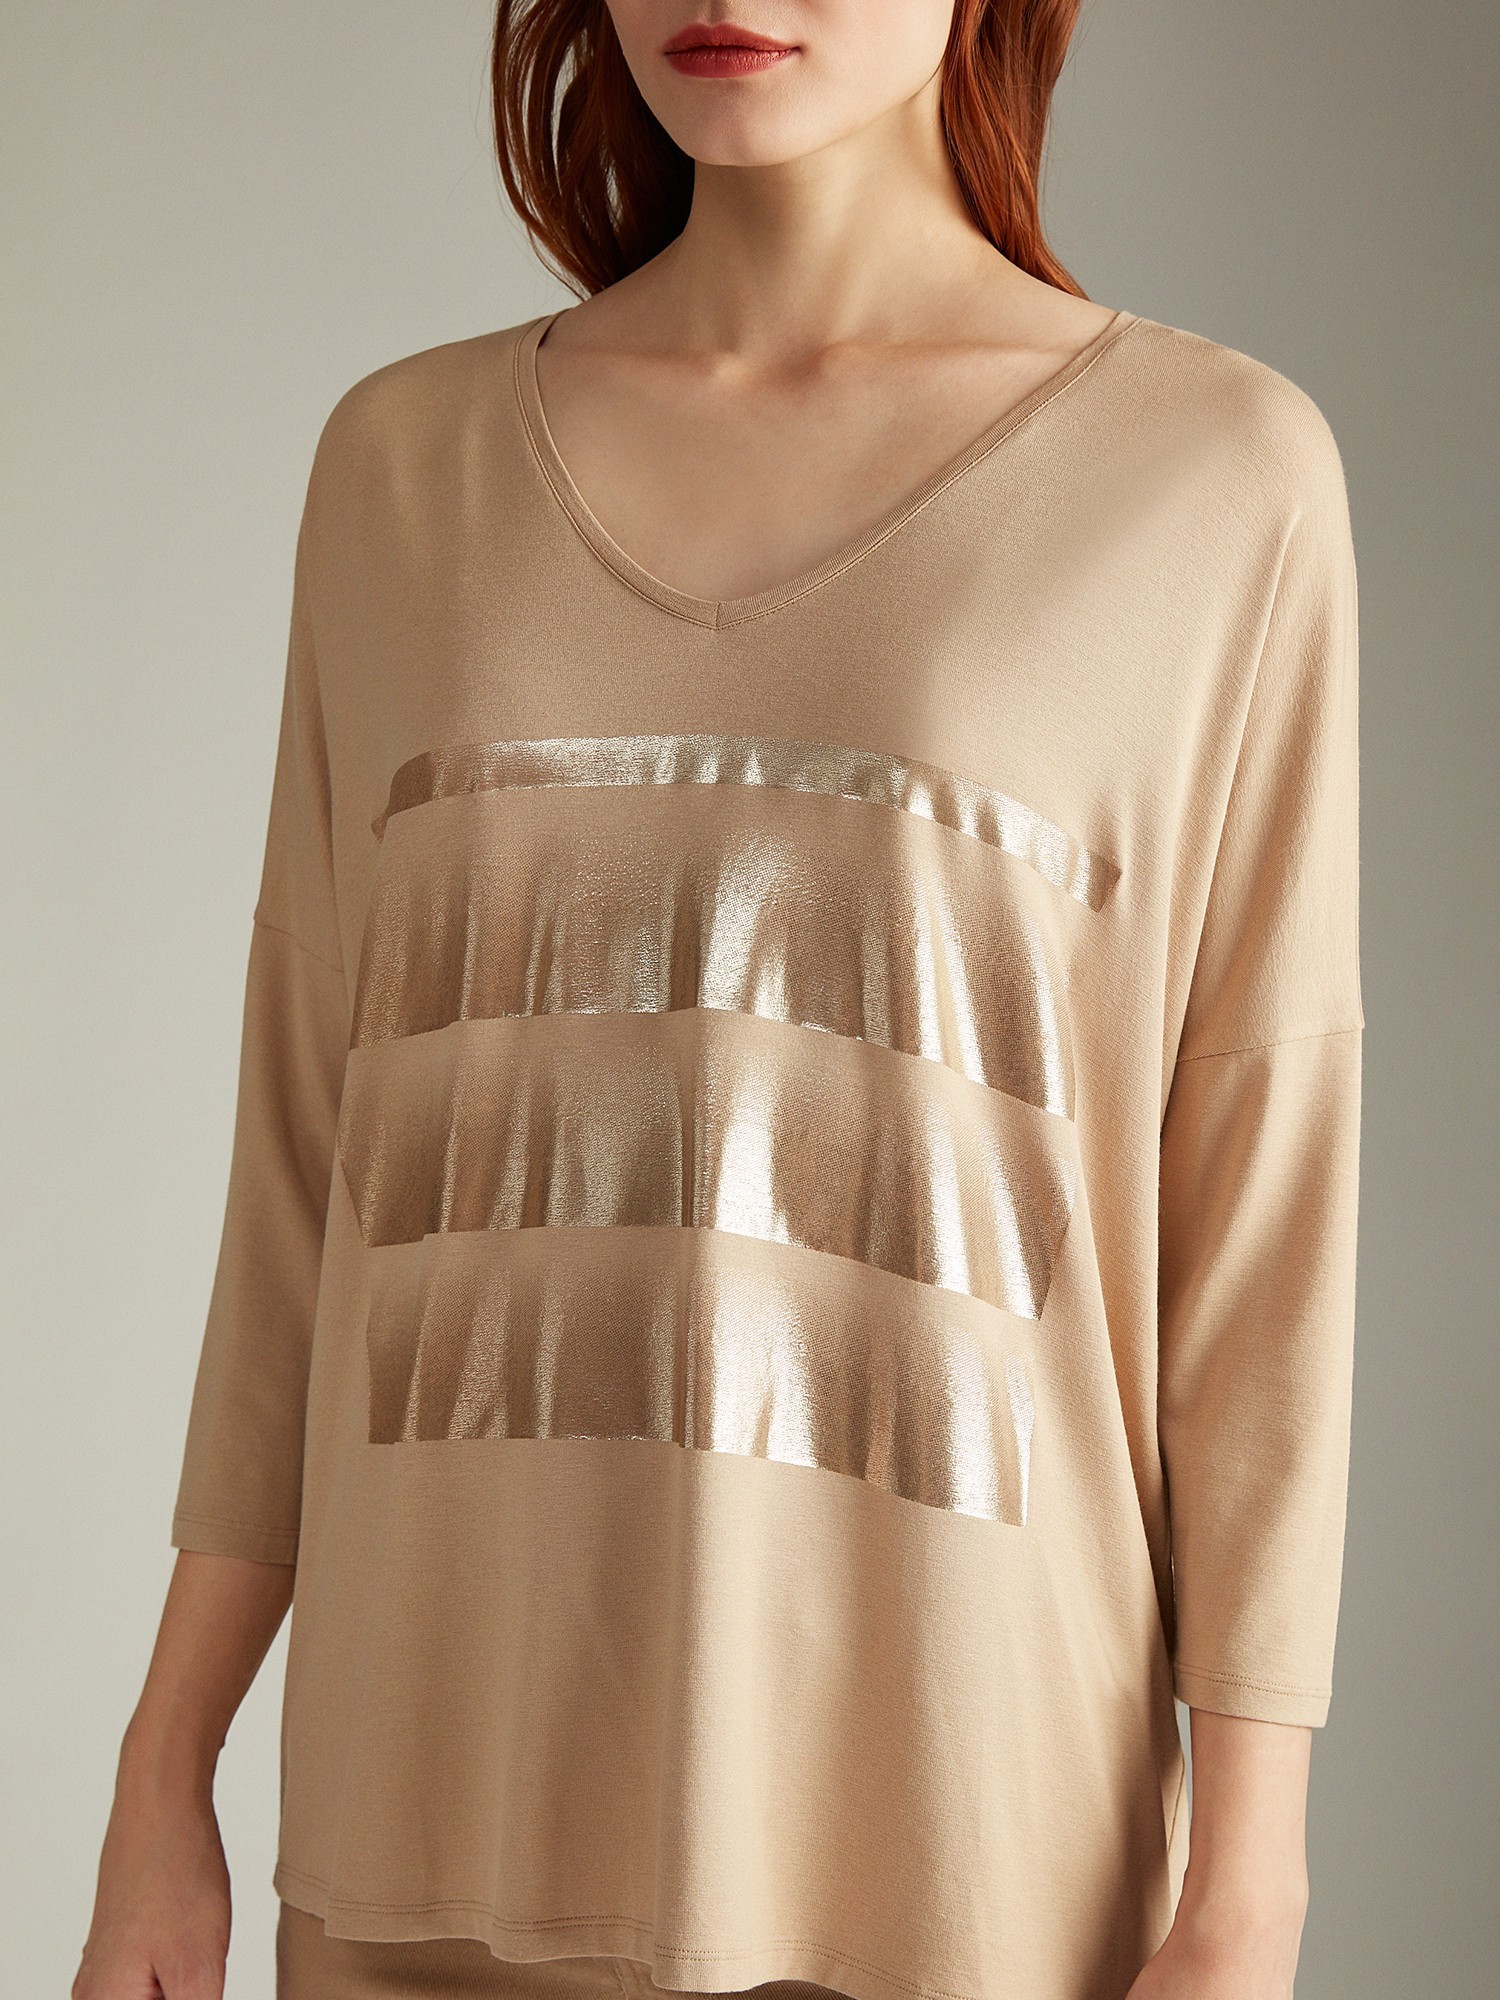 Трикотажная блуза с V-образным вырезом Elis BL0205K - фото 3